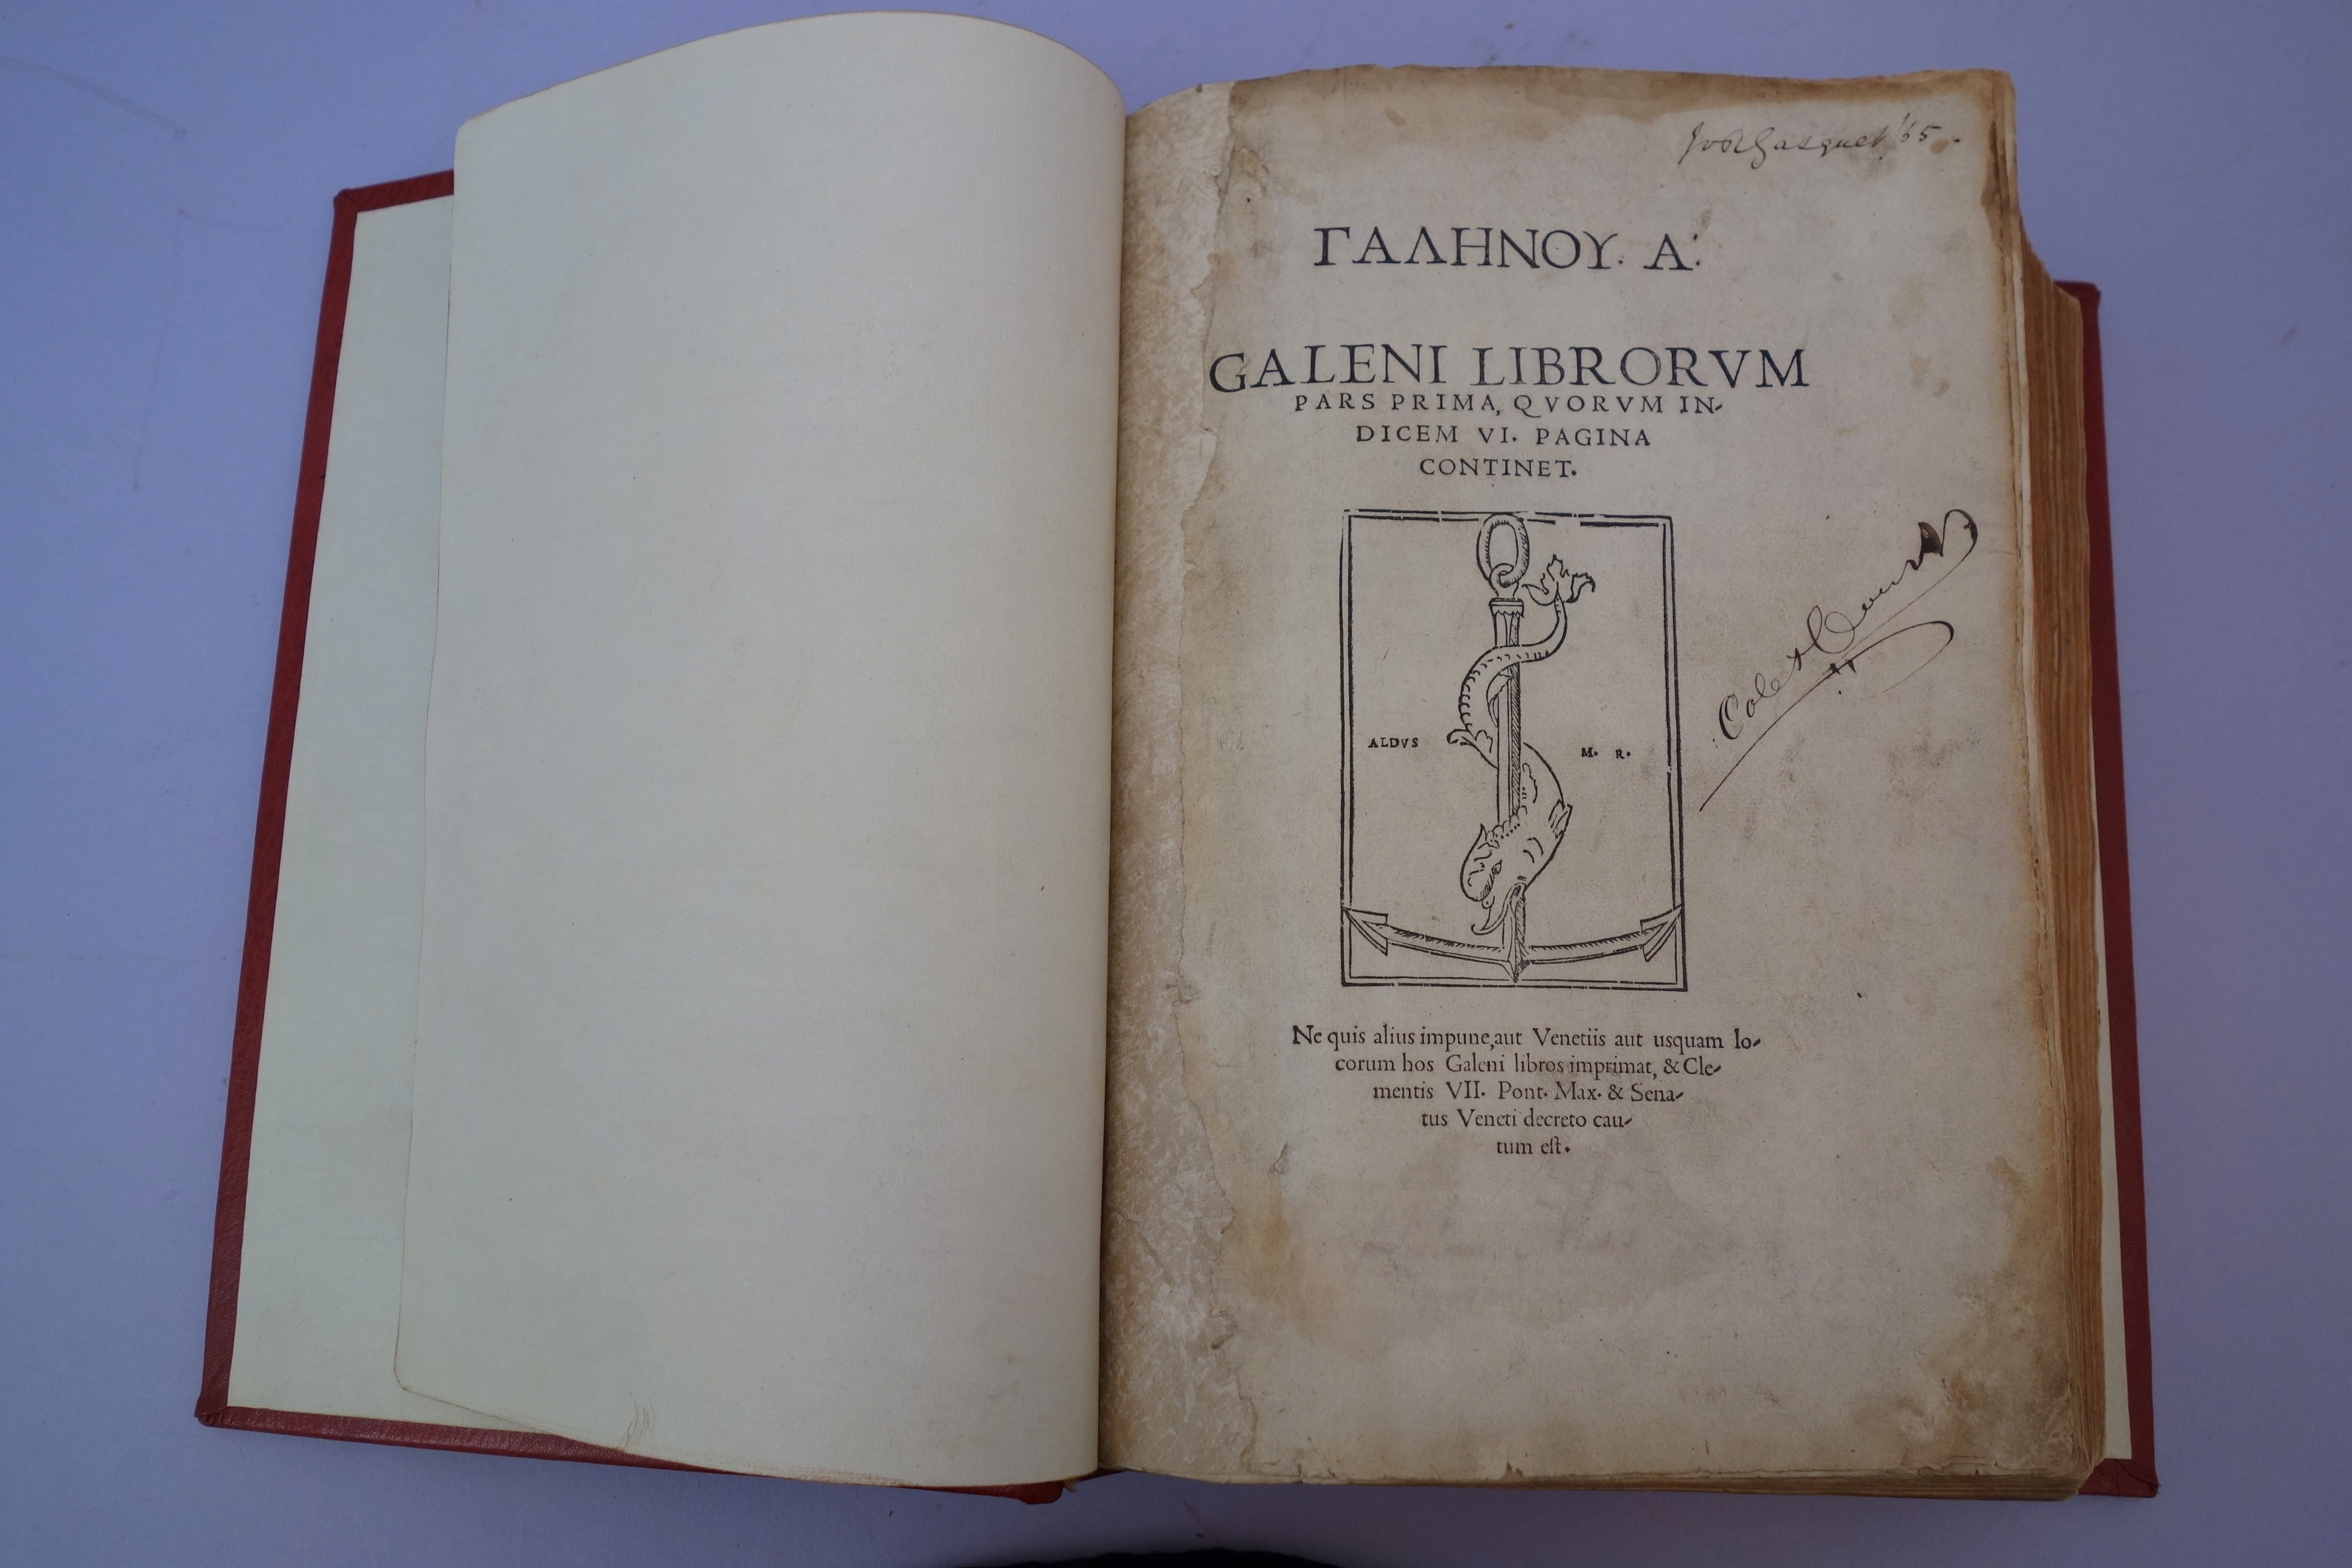 Aldine Galen title page of first volume